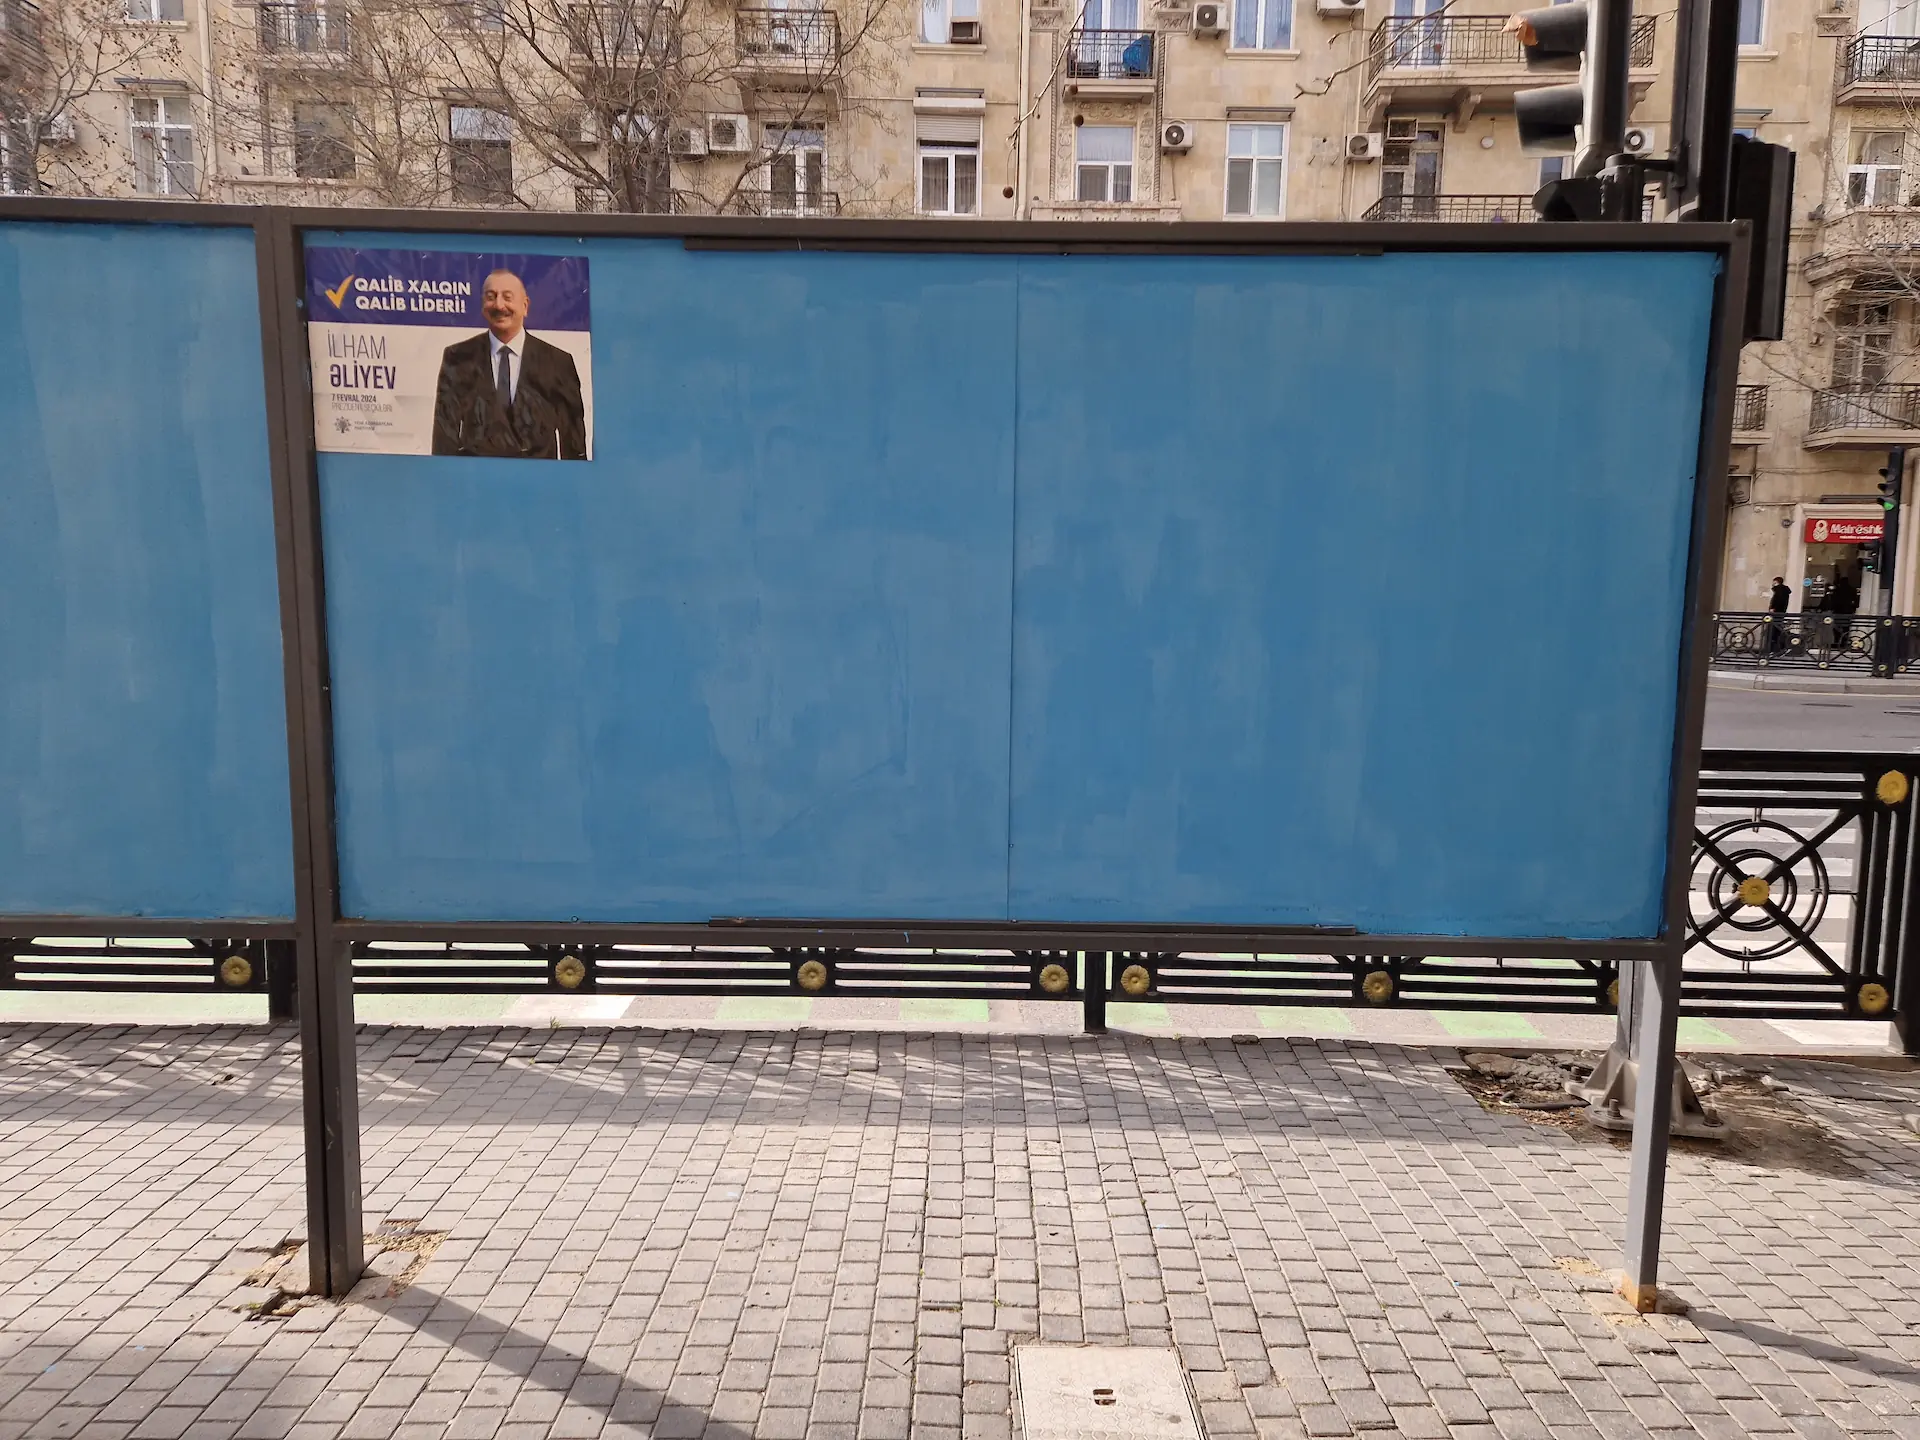 Le même panneau bleu, mais une seule affiche y est accrochée, celle de Ilham Aliyev.